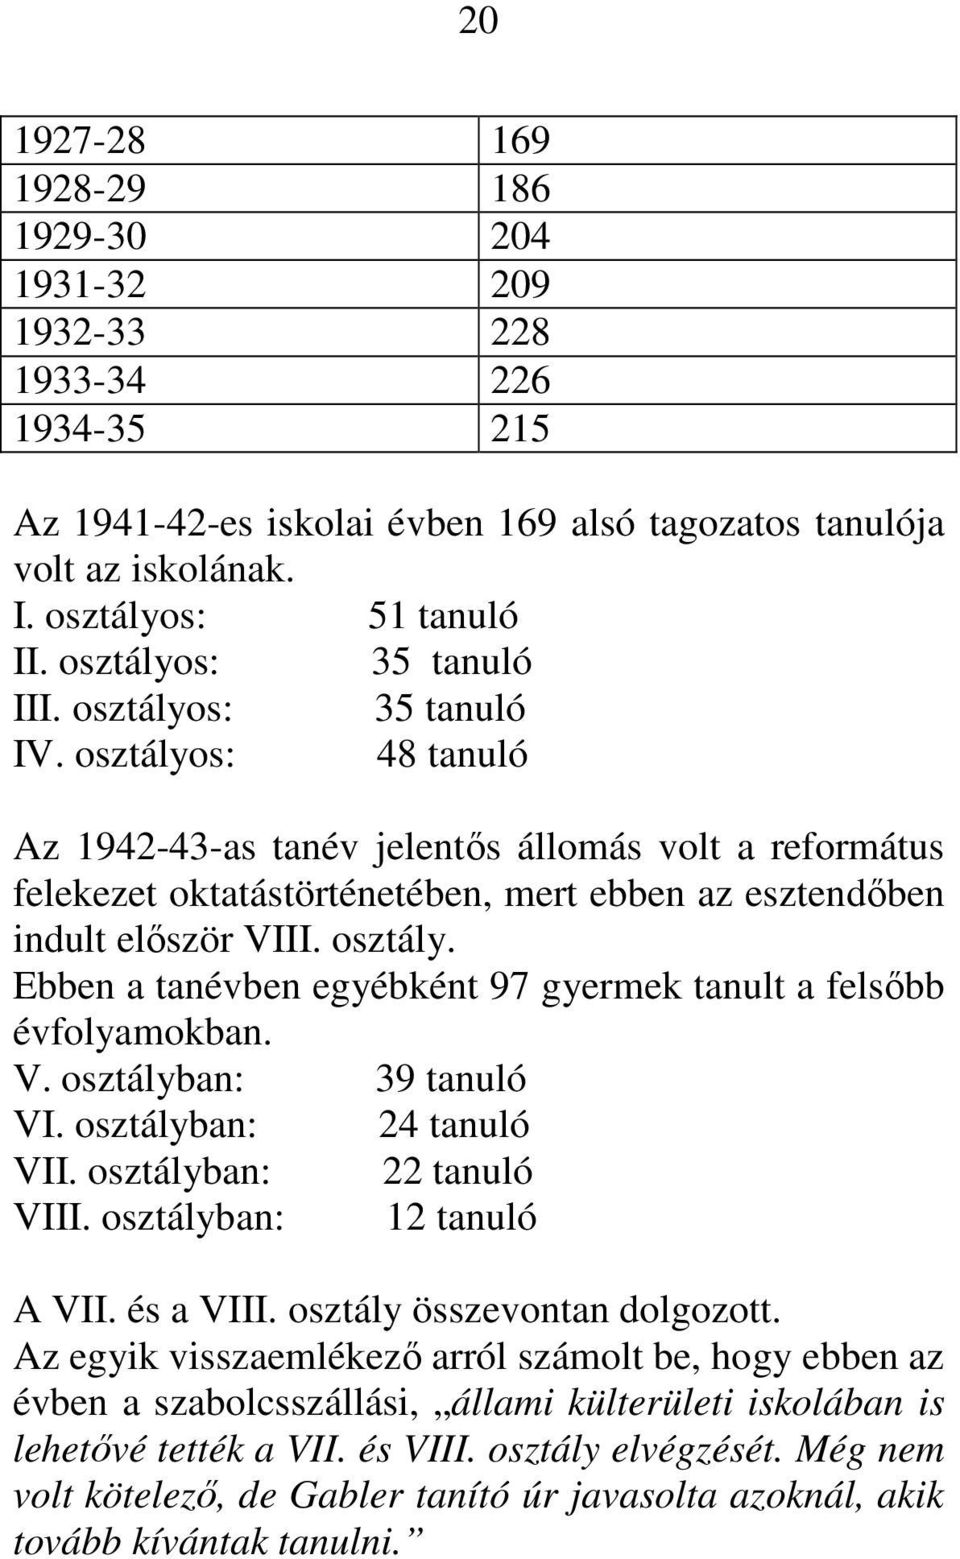 osztályos: 48 tanuló Az 1942-43-as tanév jelentıs állomás volt a református felekezet oktatástörténetében, mert ebben az esztendıben indult elıször VIII. osztály.